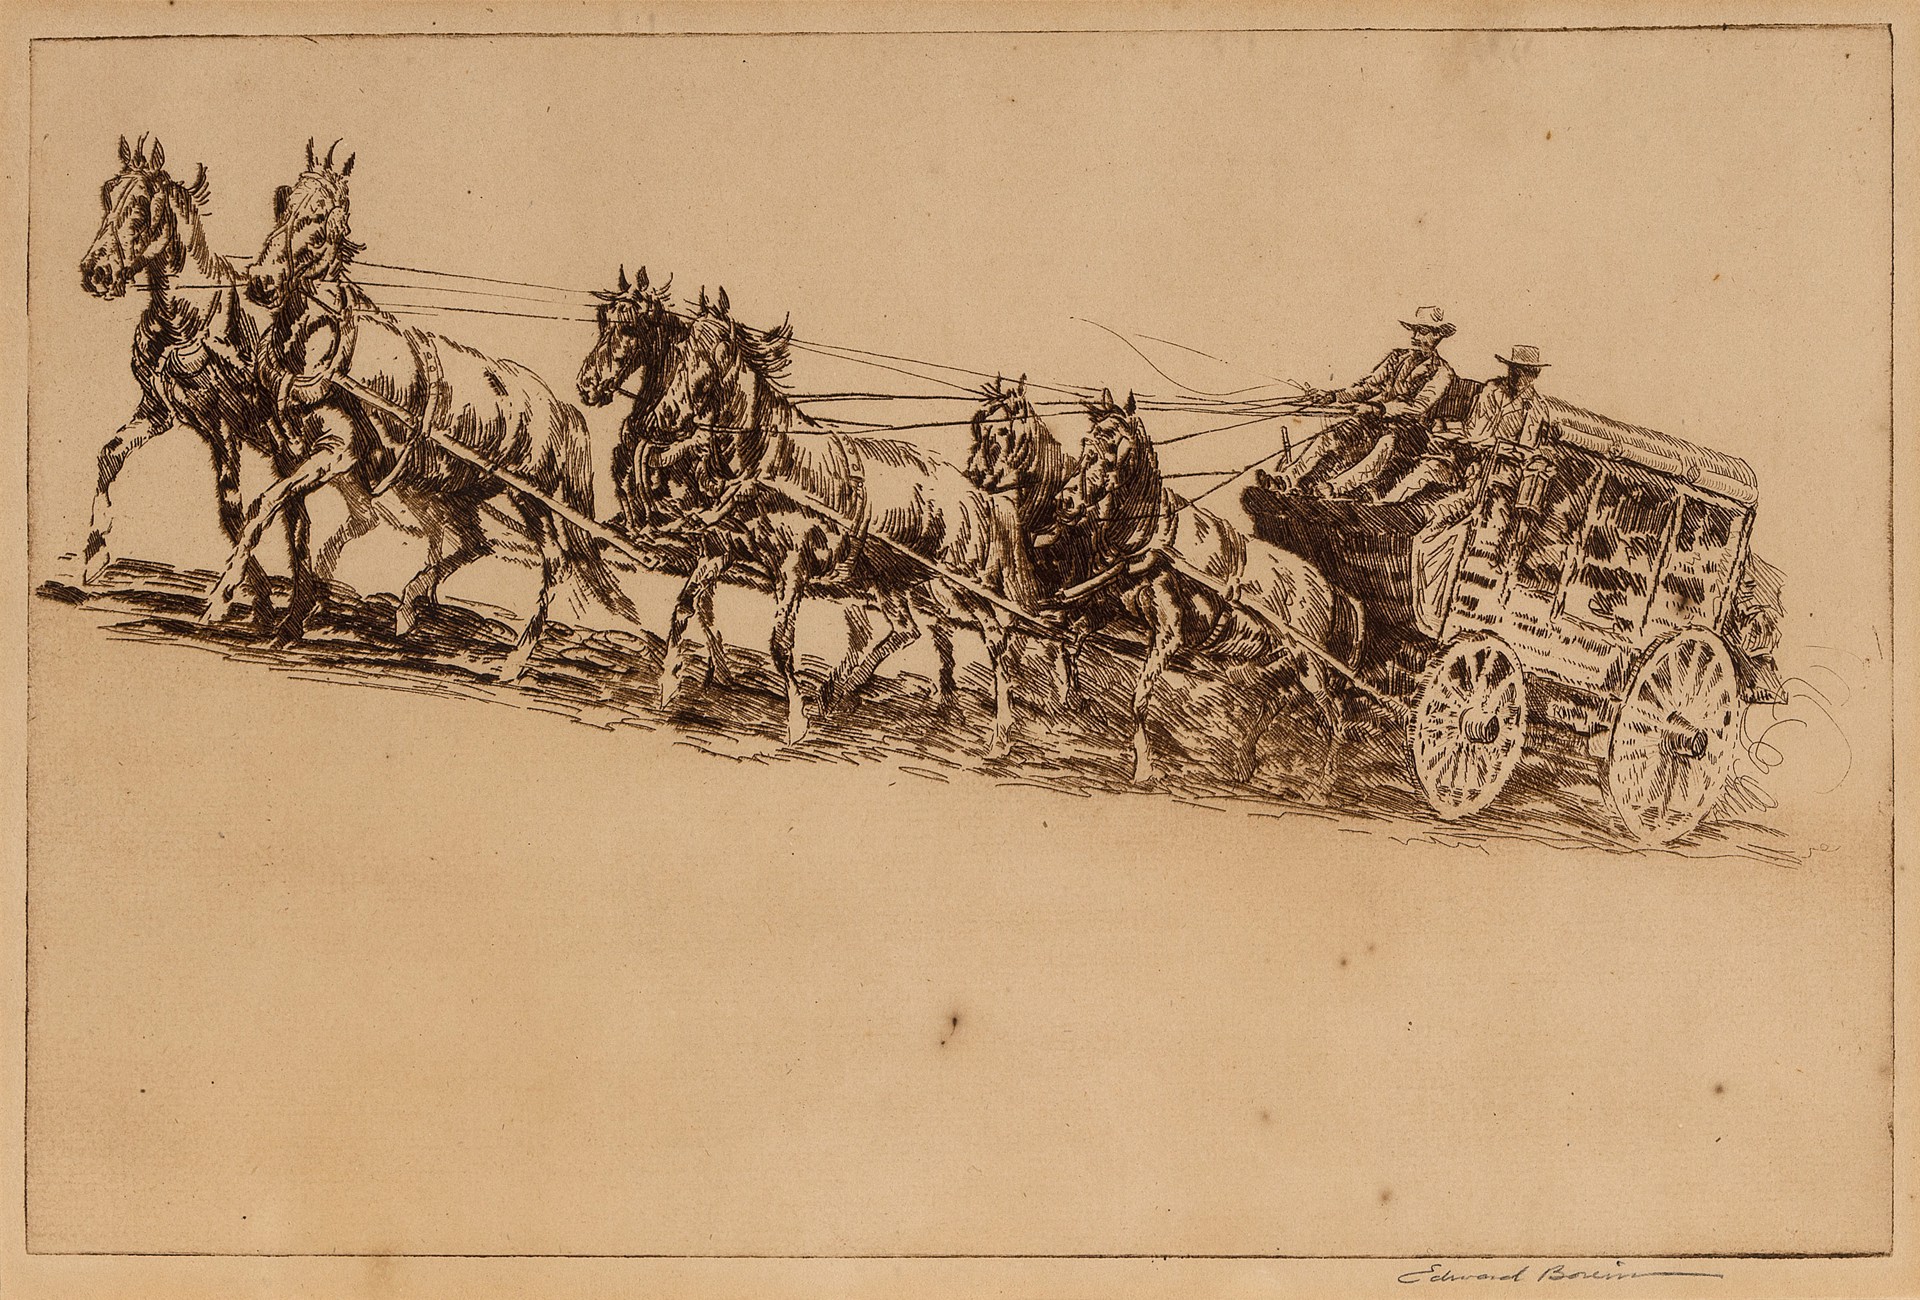 The Mud Wagon, No. 1 by Edward Borein